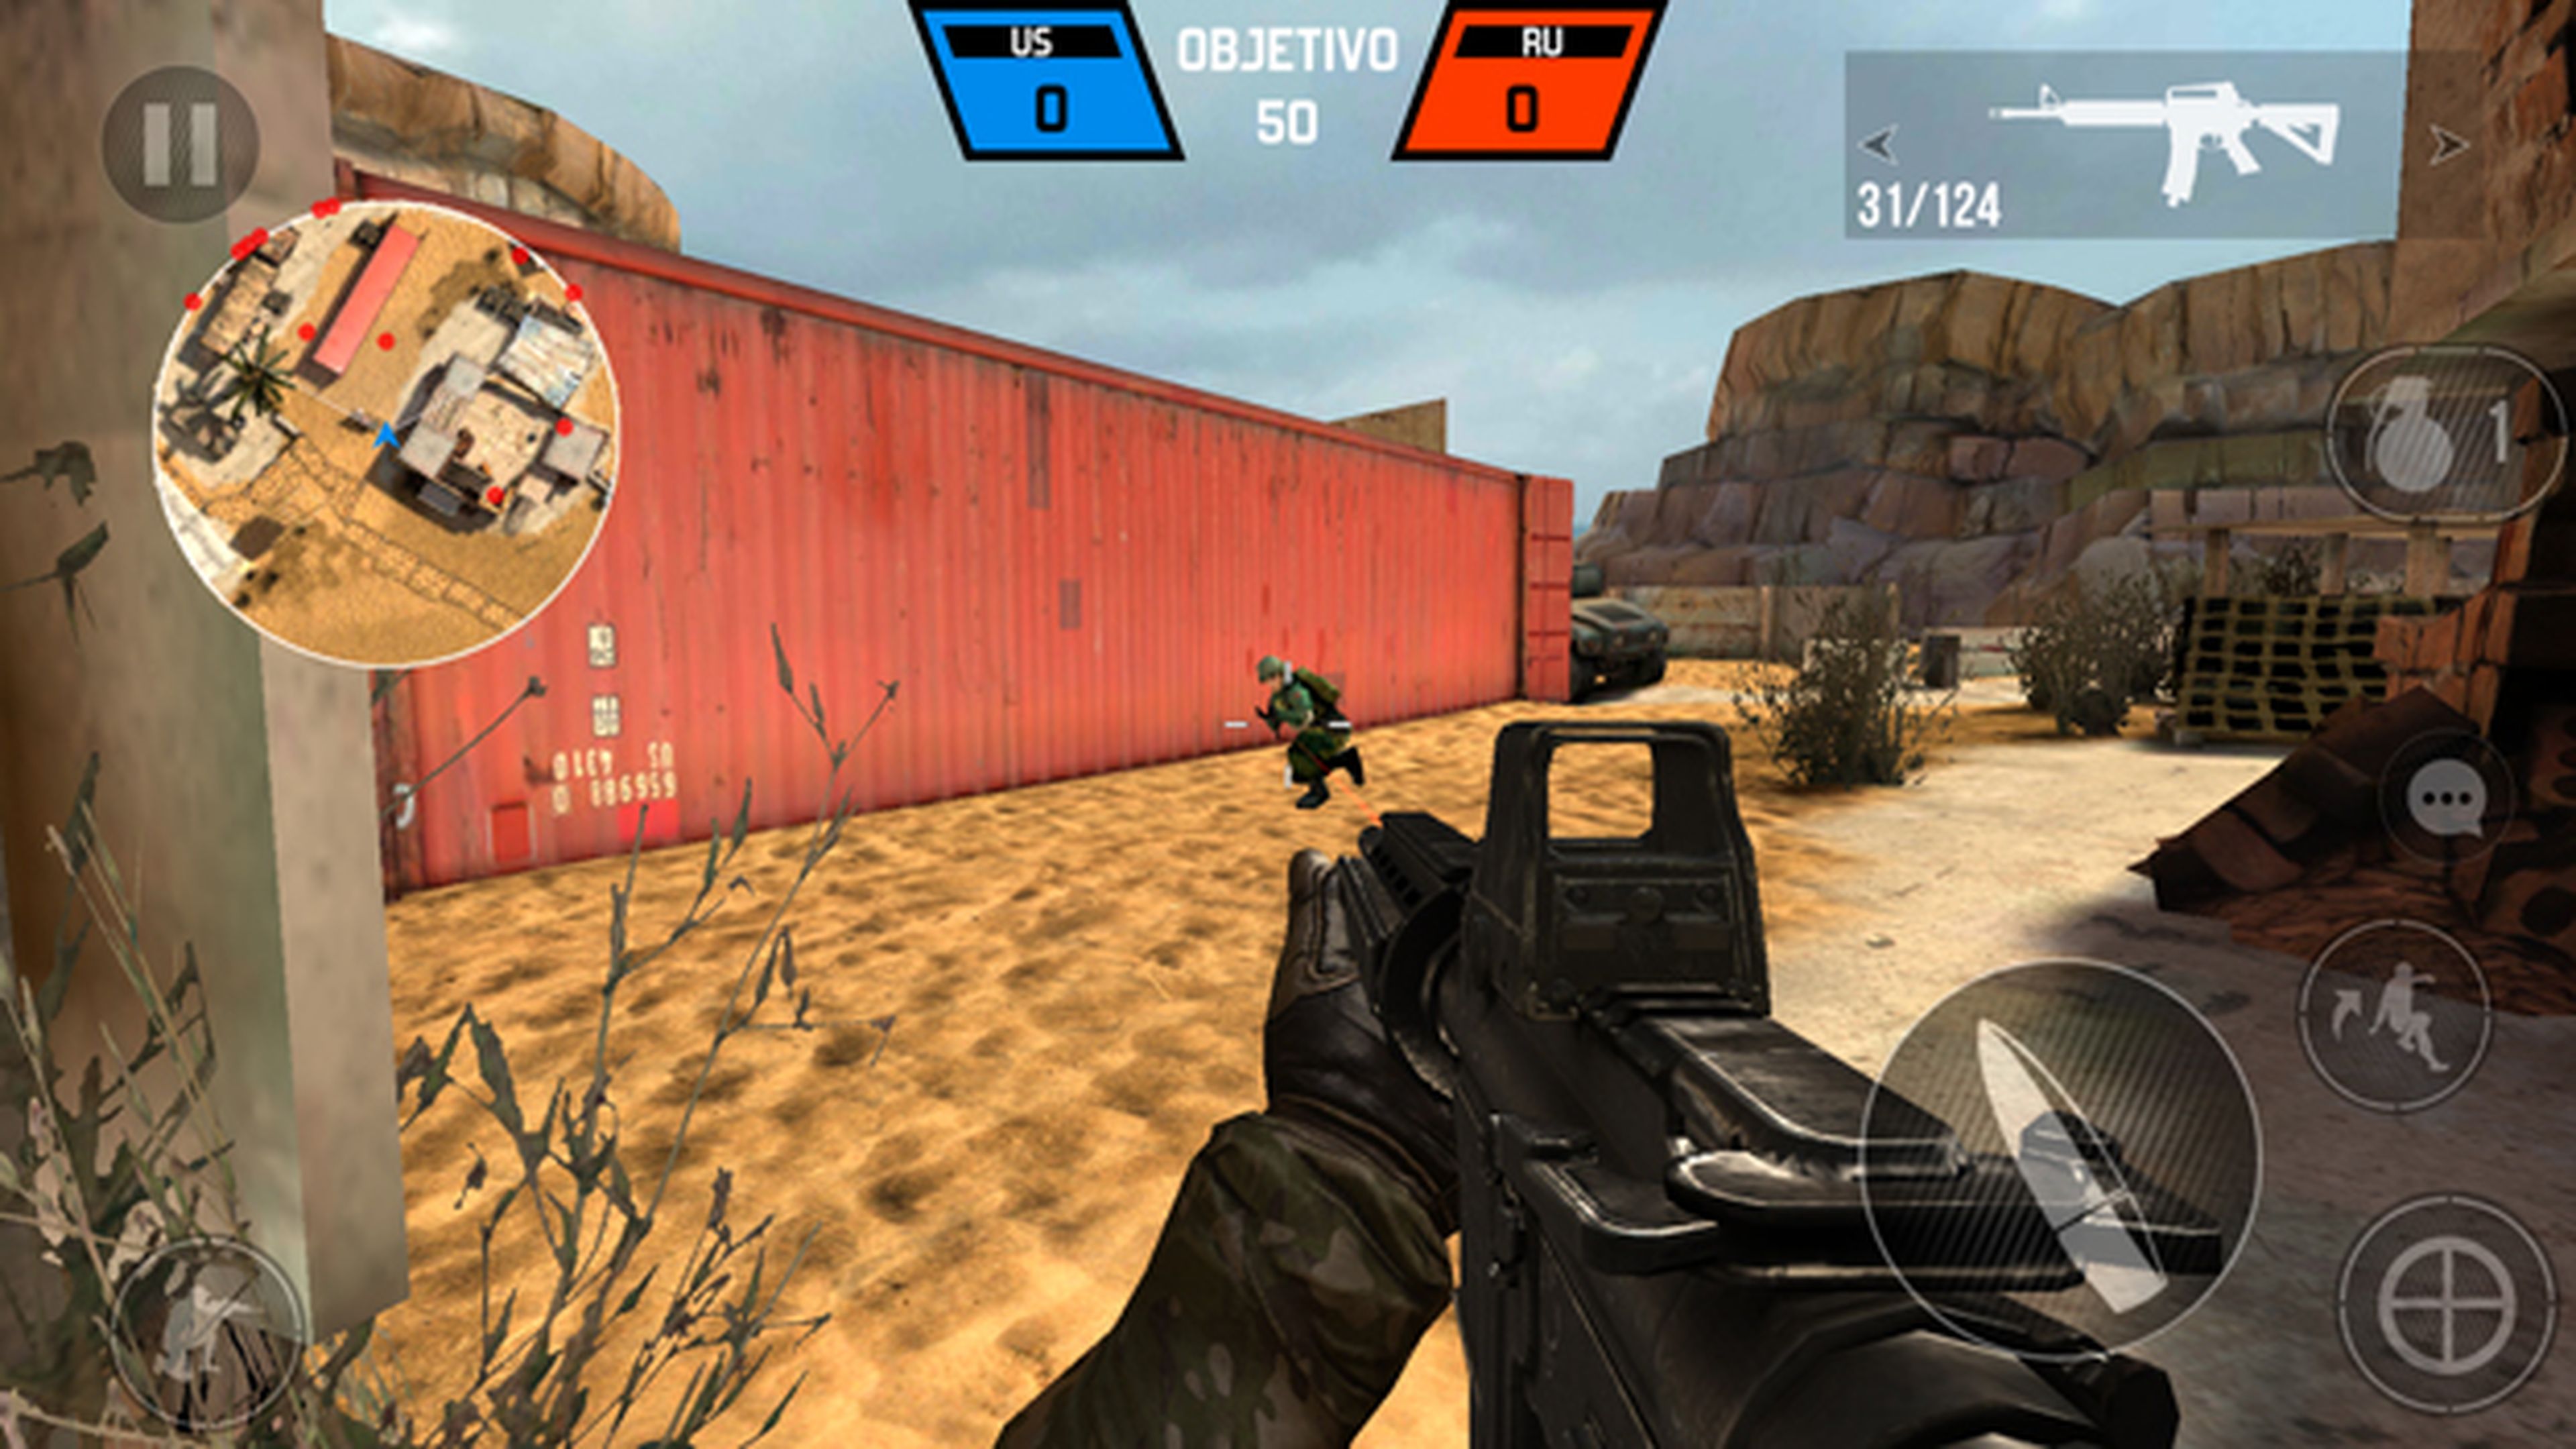 El juego Bullet Force en el Moto G5 Plus